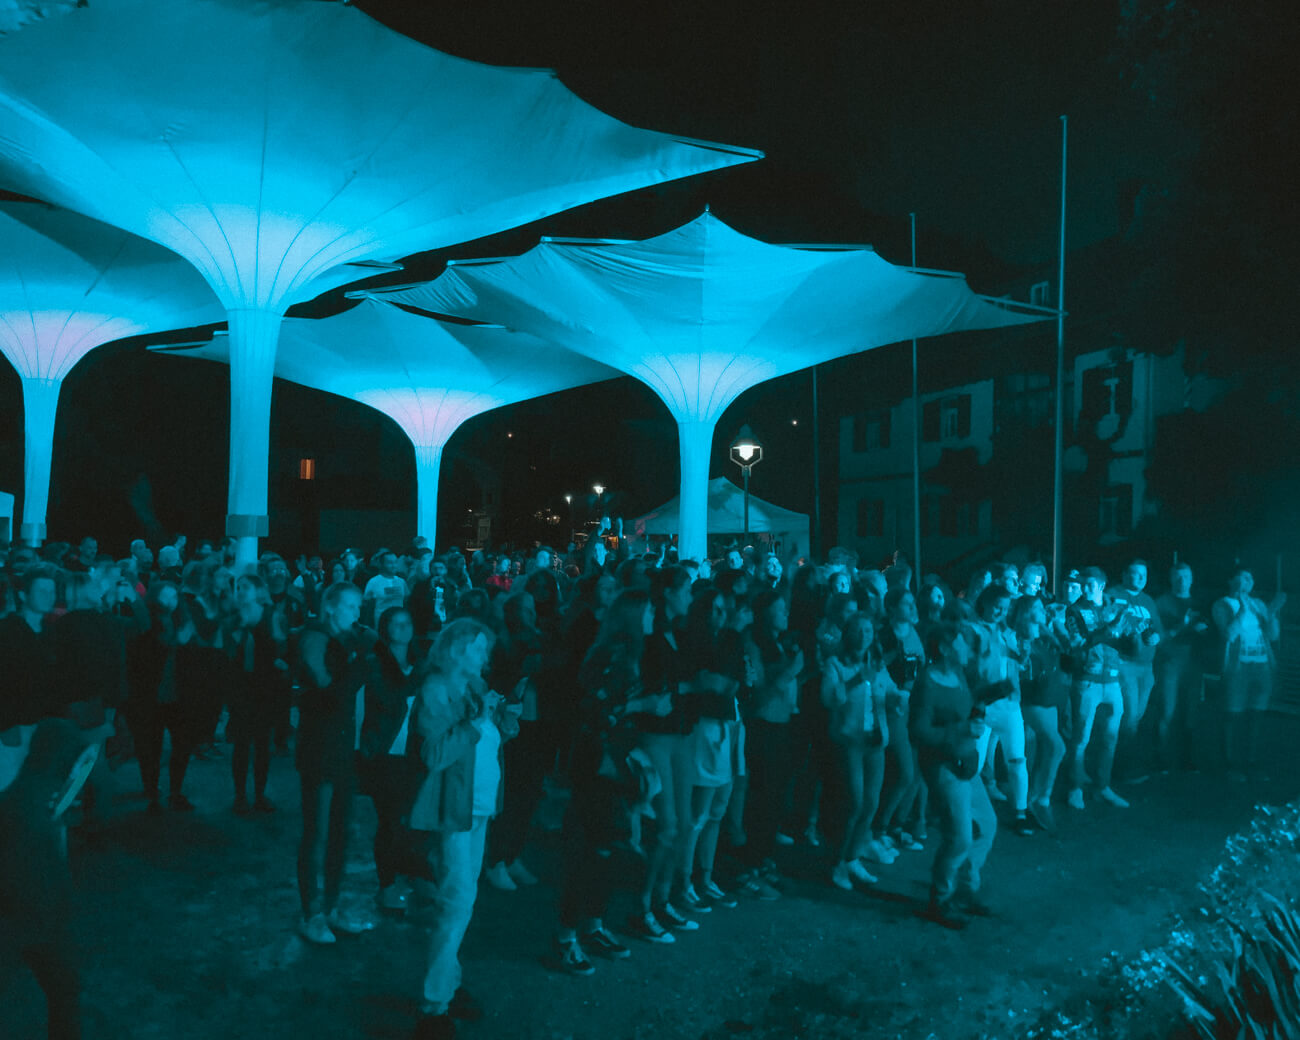 Menschenmenge unter Schirmen blau angeleuchtet von Bühnenlicht